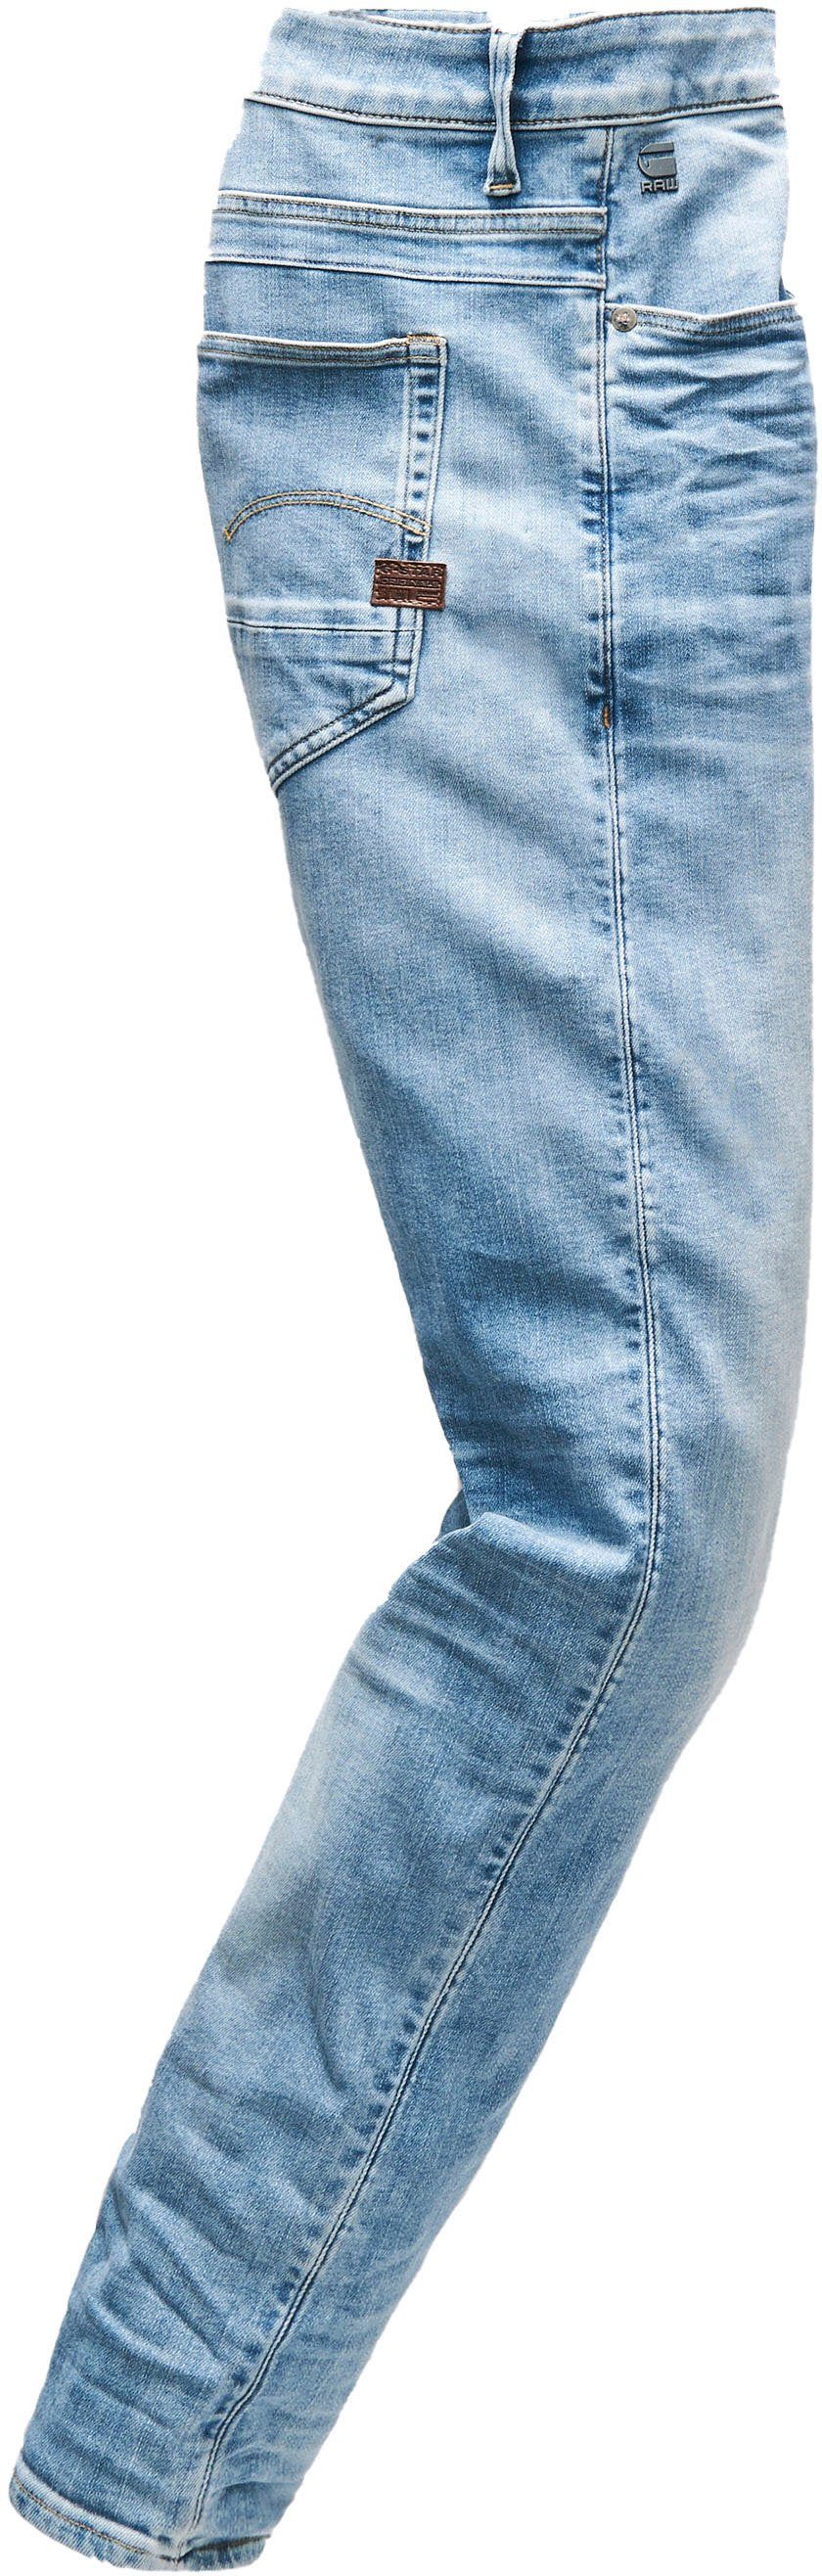 G-Star RAW Slim-fit-Jeans light-blue 3D D-Staq Fit Slim